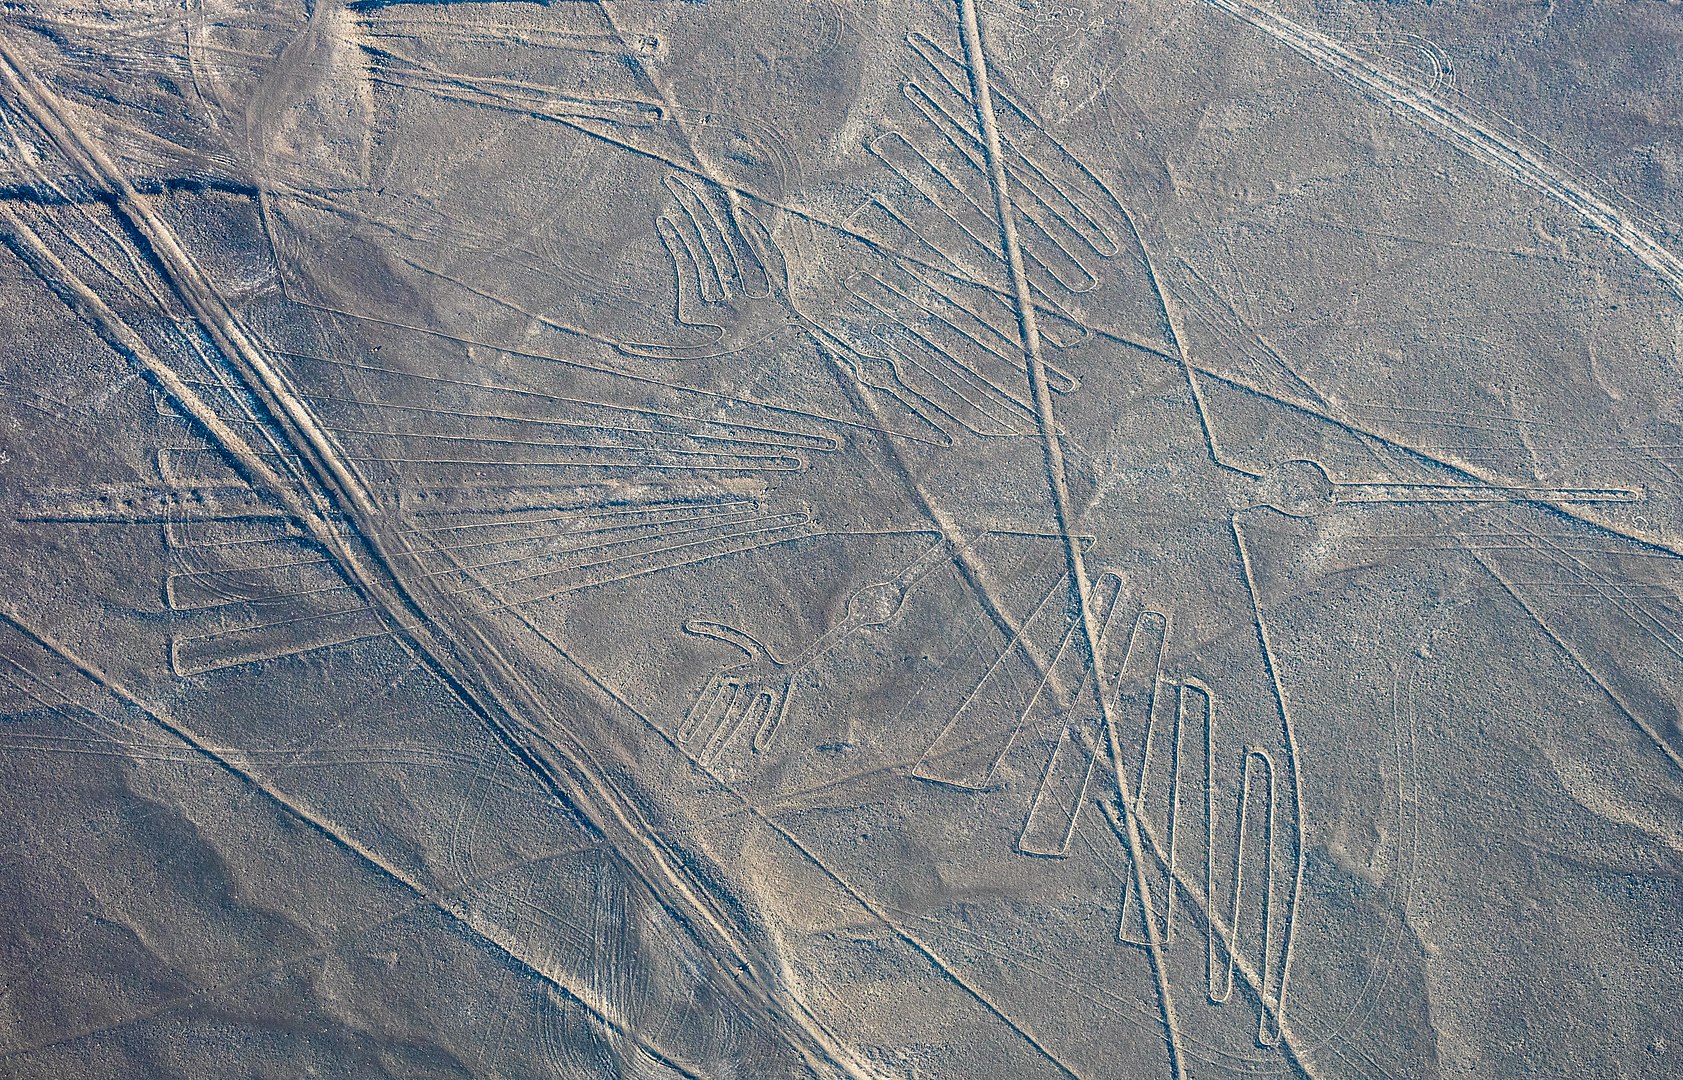 Líneas de Nazca: los misteriosos glifos que se dibujaron en el desierto peruano hace más de 1.300 años